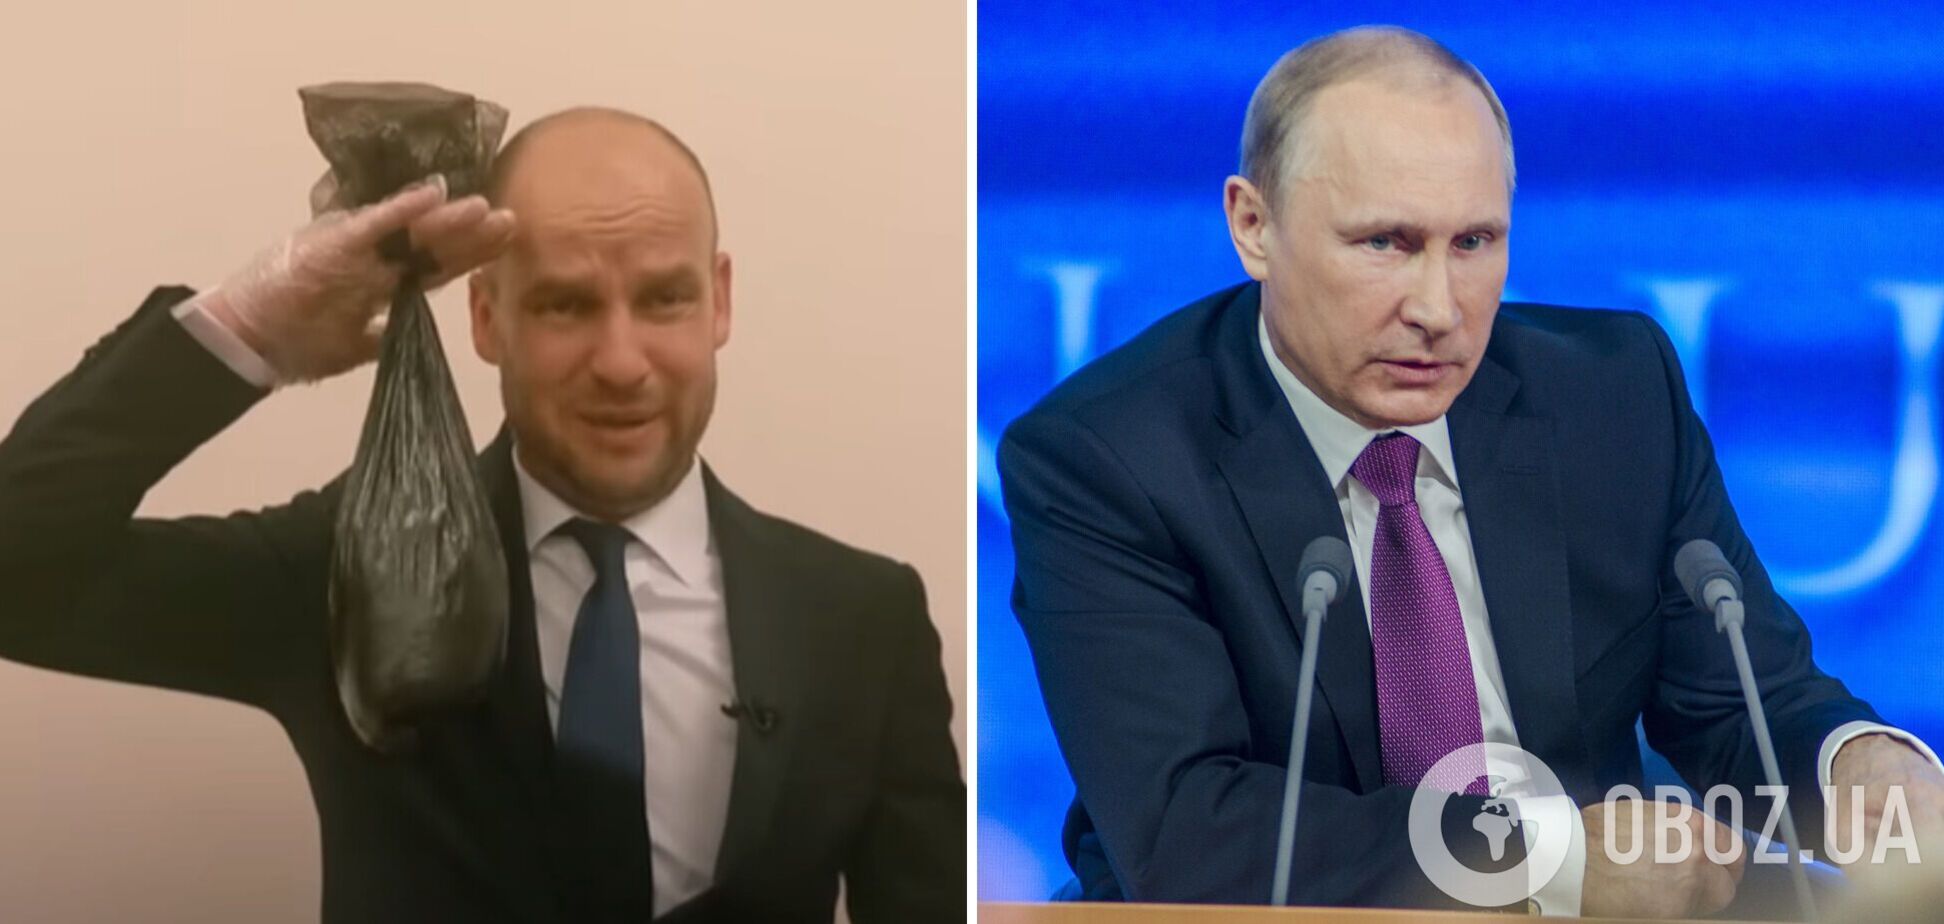 Мережу розсмішило 'інтерв'ю' з охоронцем Путіна, який збирає його фекалії. Відео